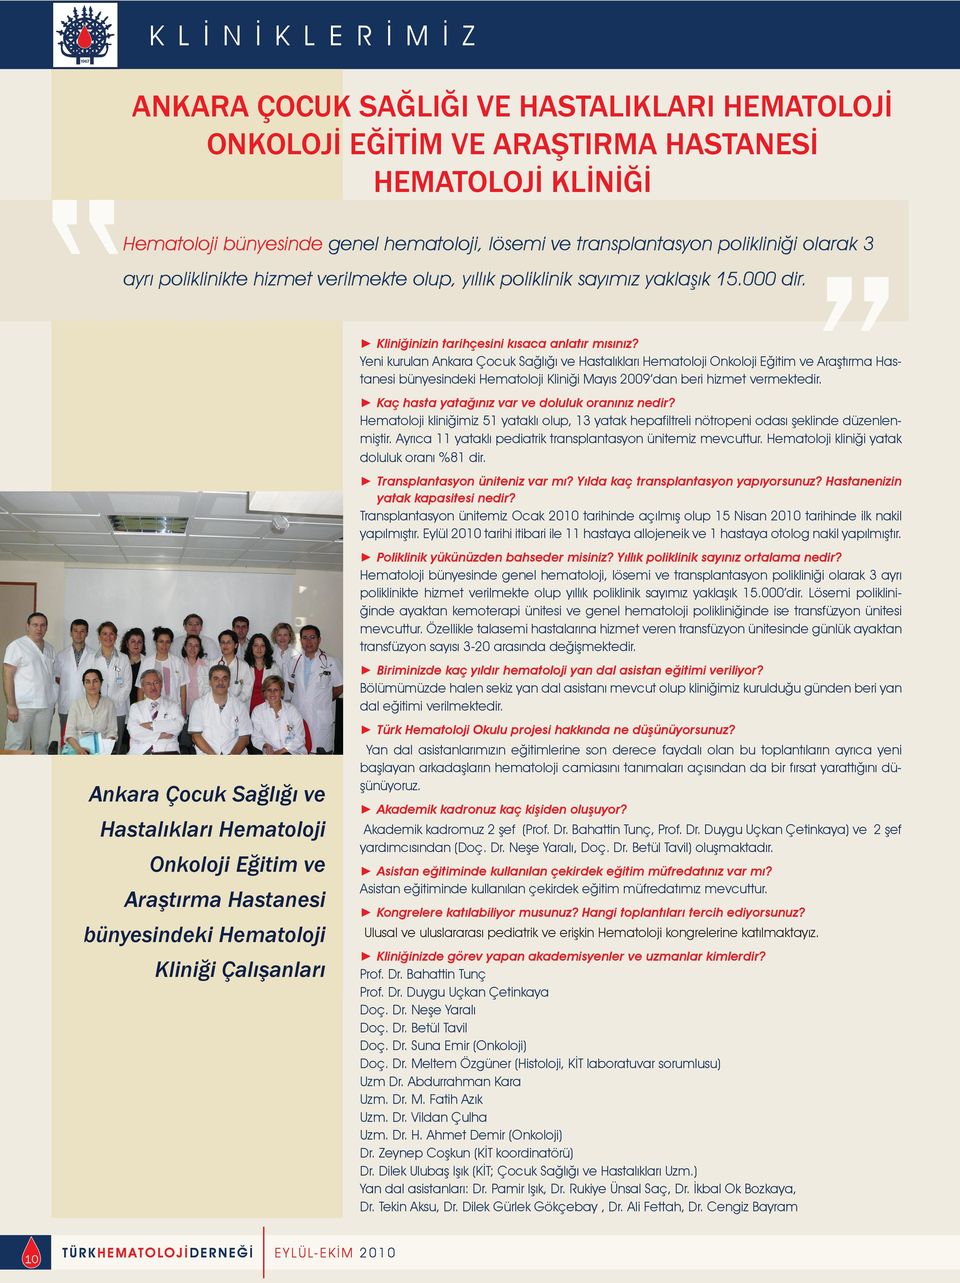 Yeni kurulan Ankara Çocuk Sağlığı ve Hastalıkları Hematoloji Onkoloji Eğitim ve Araştırma Hastanesi bünyesindeki Hematoloji Kliniği Mayıs 2009 dan beri hizmet vermektedir.